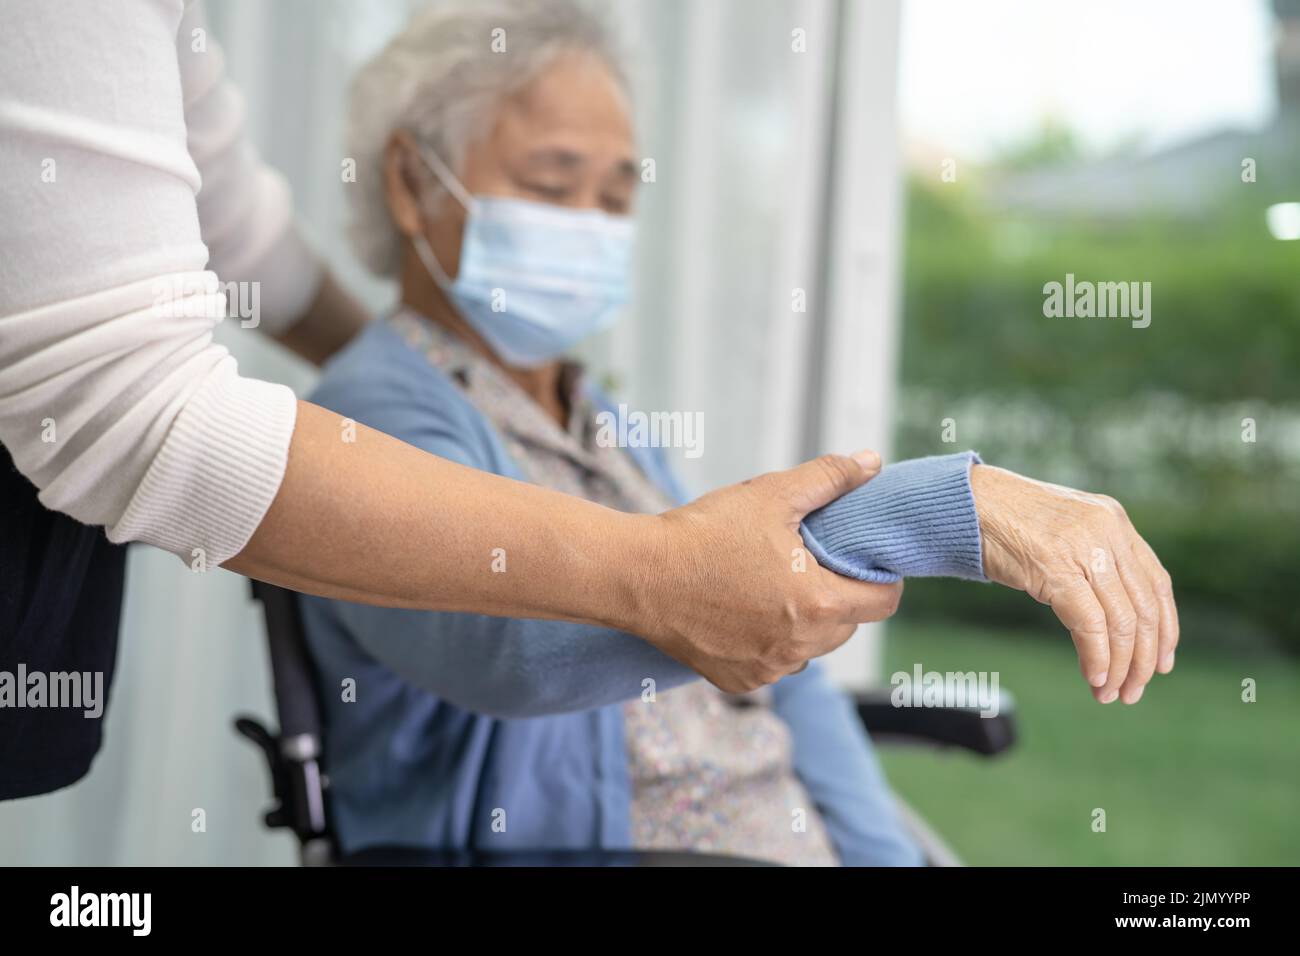 Aide asiatique senior ou âgée vieille femme assise sur un fauteuil roulant et portant un masque facial pour protéger l'infection de sécurité Covid19 coronavirus. Banque D'Images